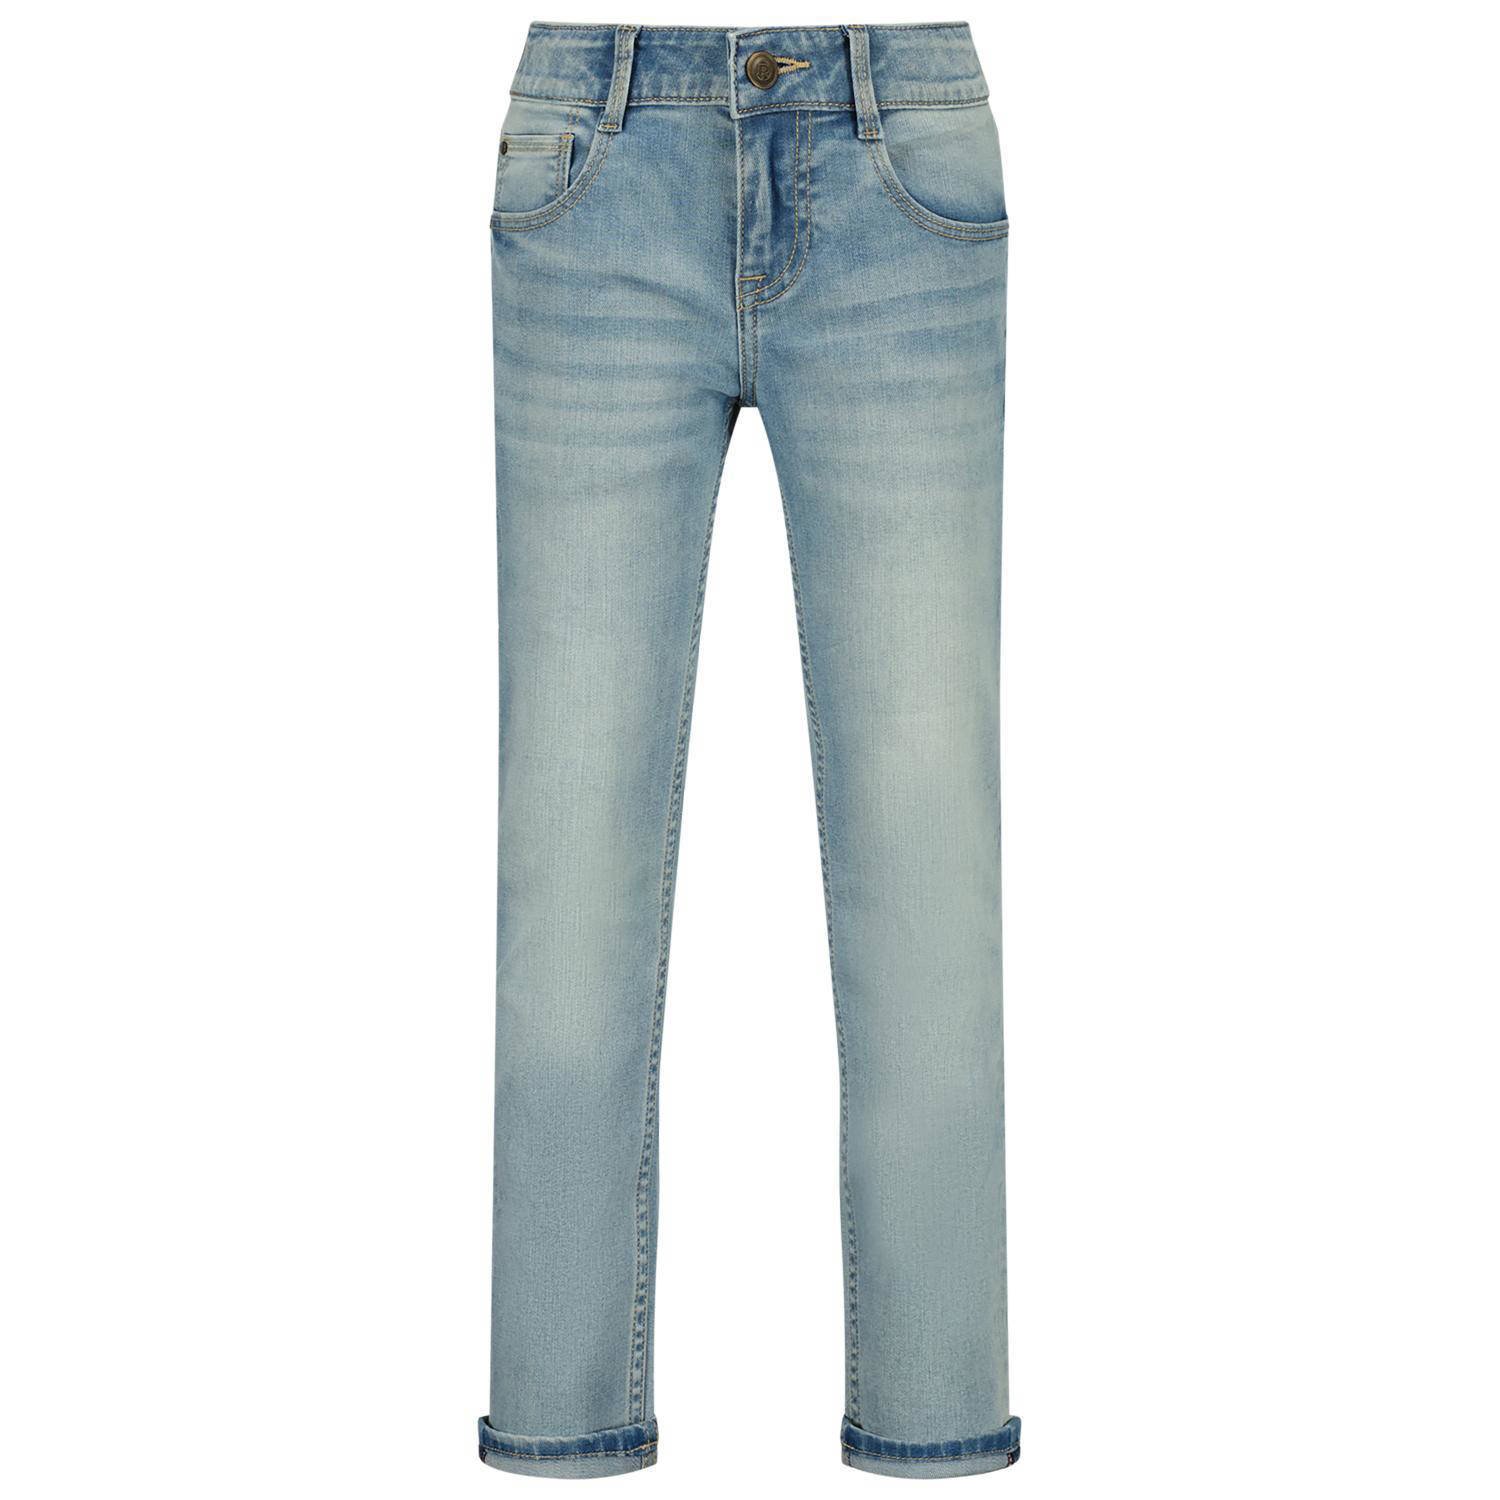 Raizzed straight fit jeans Berlin vintage blue Blauw Jongens Stretchdenim 152